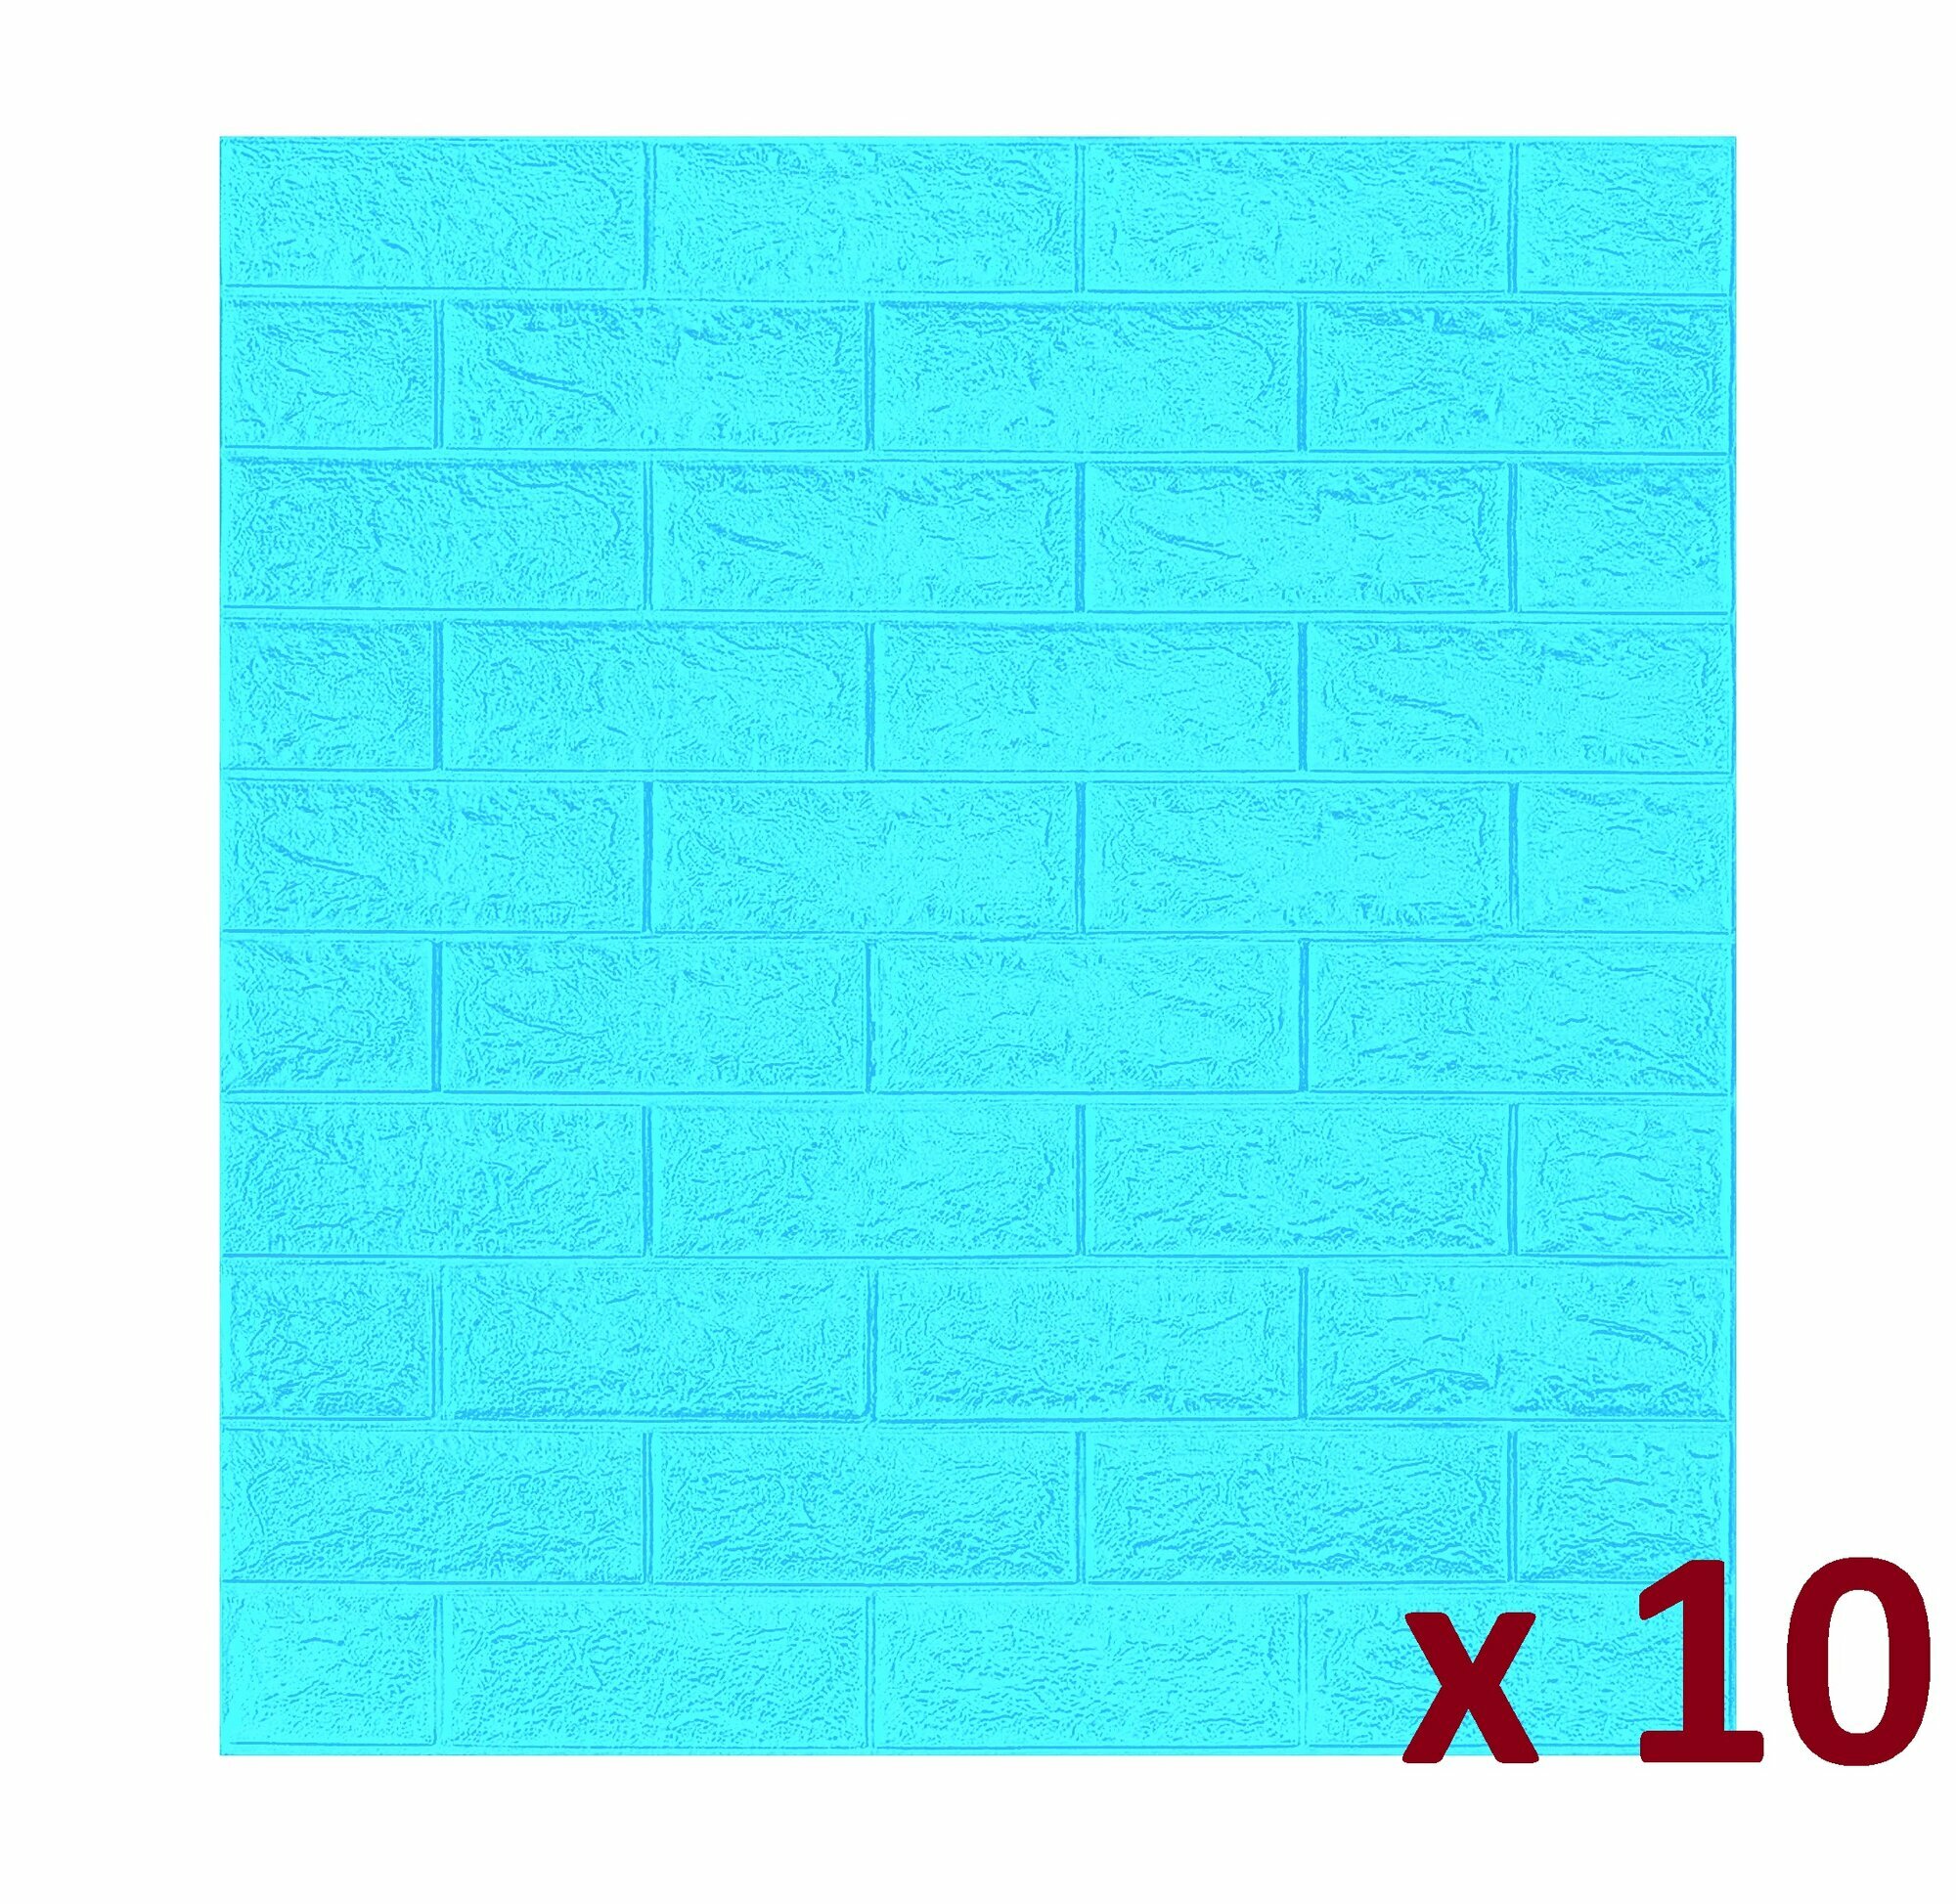 Мягкая самоклеящаяся 3D панель пвх для стен, Классический кирпич цвет Голубой, 70x77 см, 10 штук в упак